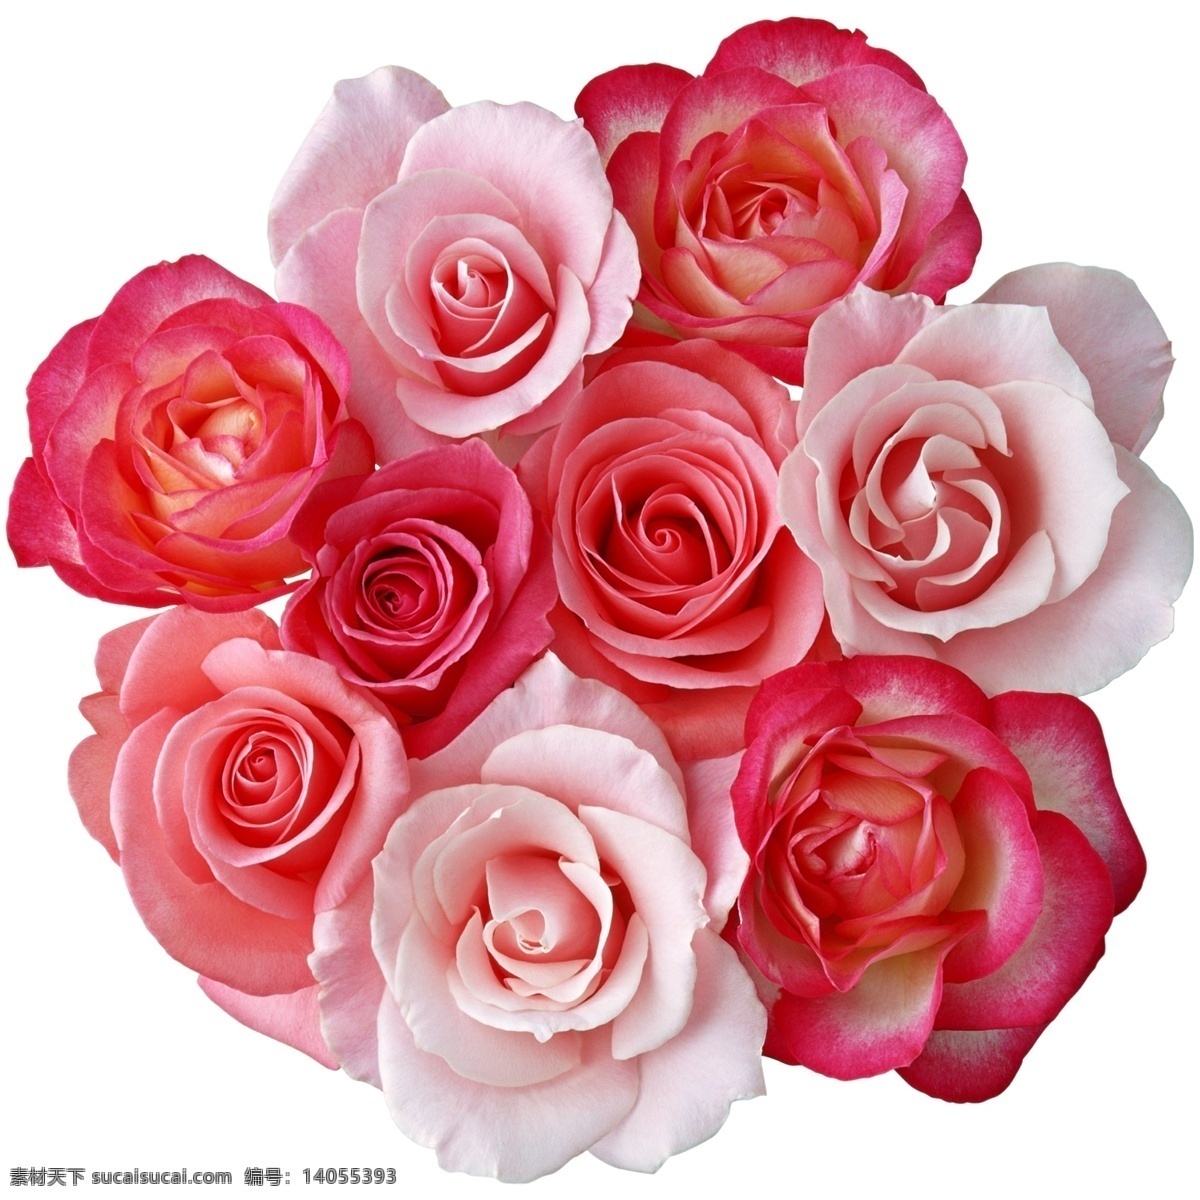 玫瑰花束 玫瑰 花束 粉玫瑰 红玫瑰 玫瑰组合 月季 一束玫瑰 玫瑰花 花卉 花朵 各种花朵 春天 野花 自然 野生 生态 盛开 开放 植物 户外 美丽 特写 生物世界 高清分层 分层 源文件